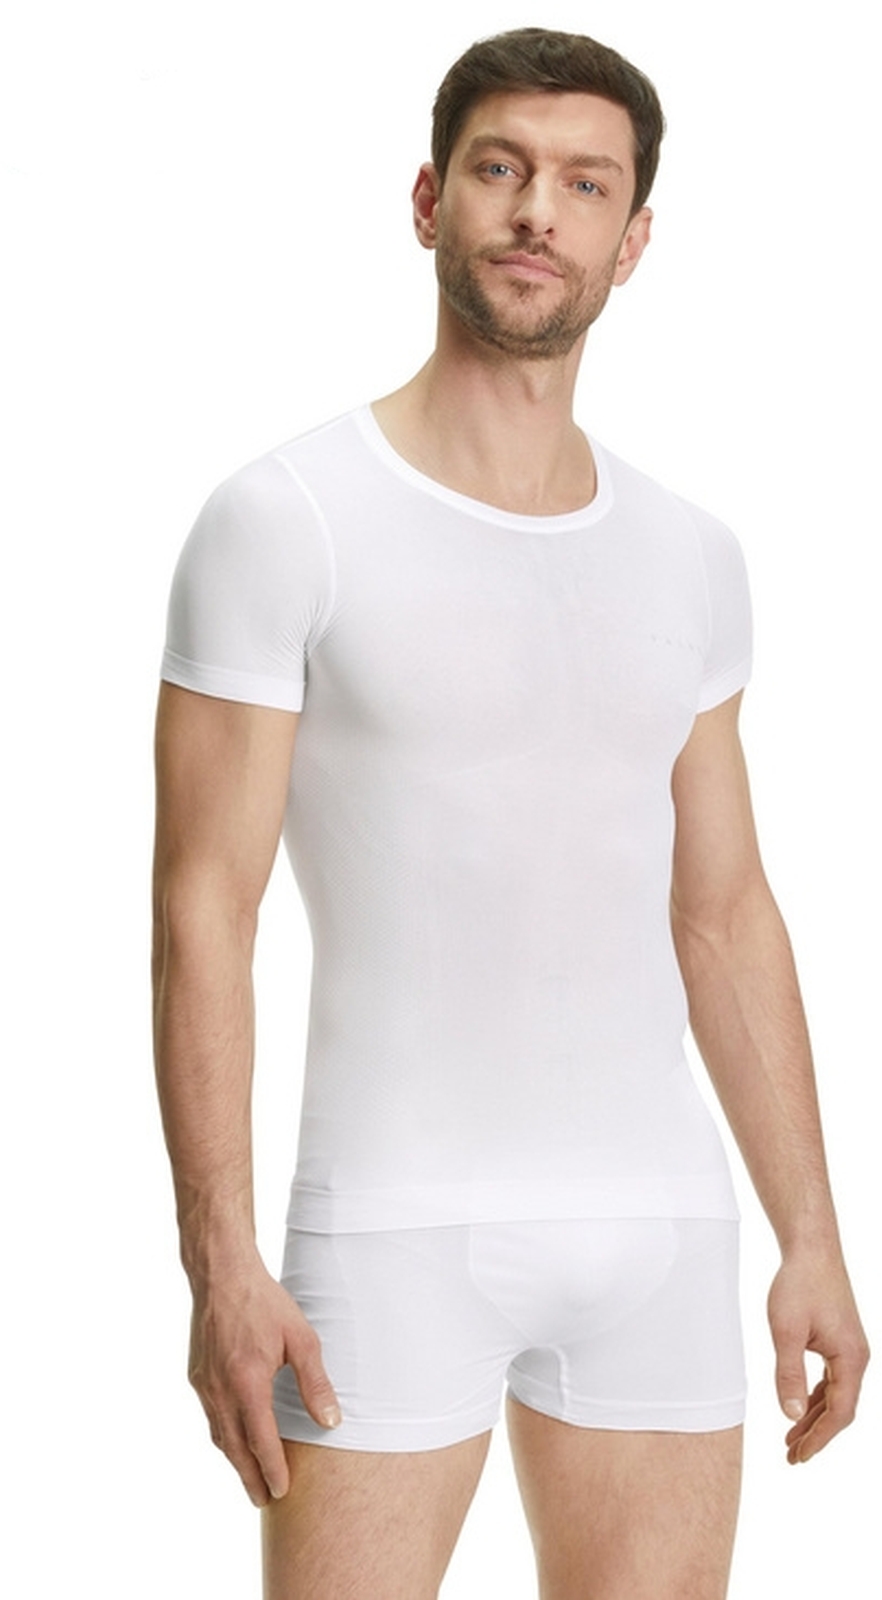 E-shop Falke Men Short sleeve Shirt Ultralight Cool - white S